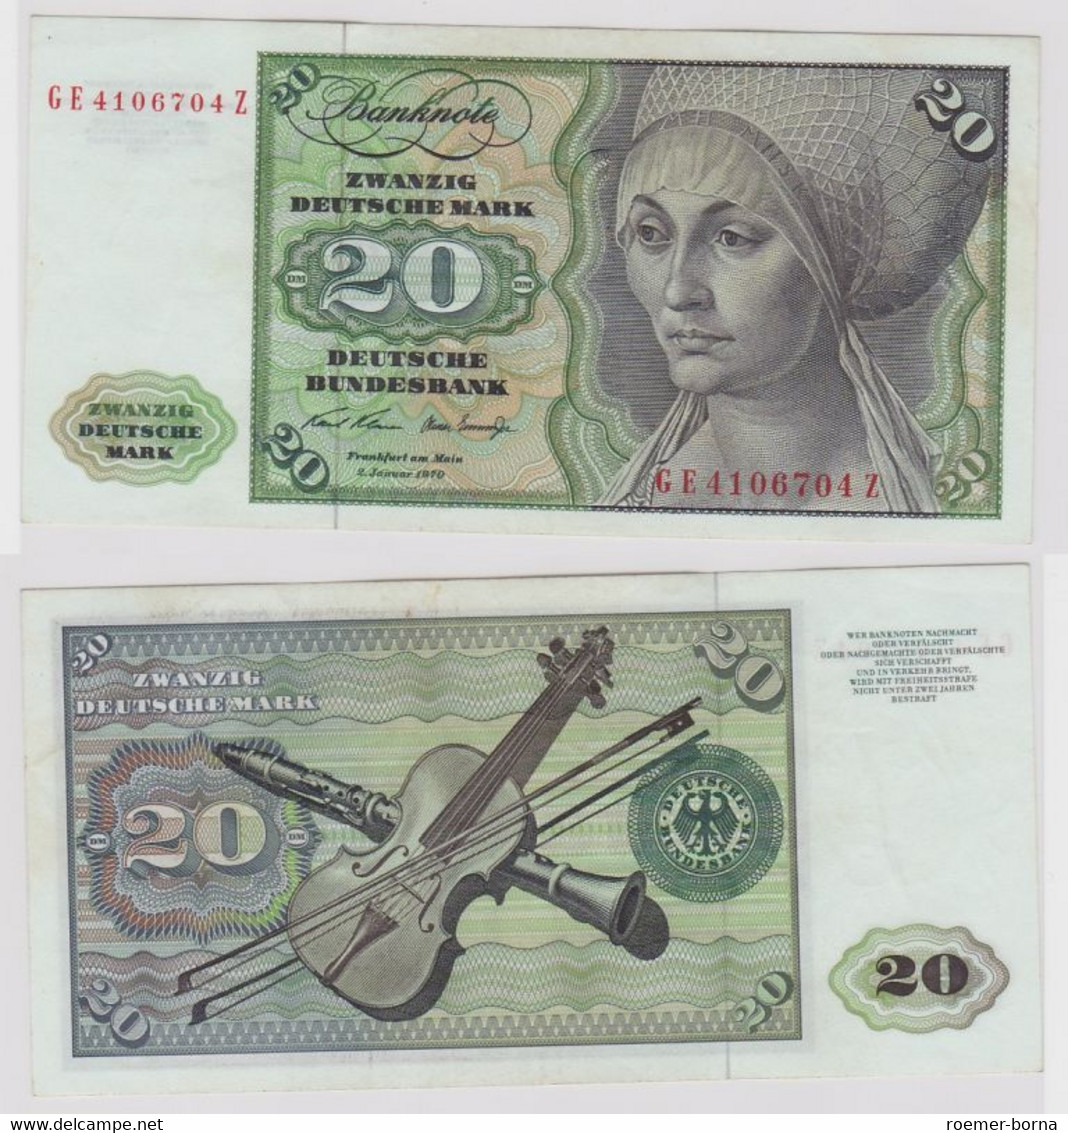 T148435 Banknote 20 DM Deutsche Mark Ro. 271b Schein 2.Jan. 1970 KN GE 4106704 Z - 20 Deutsche Mark